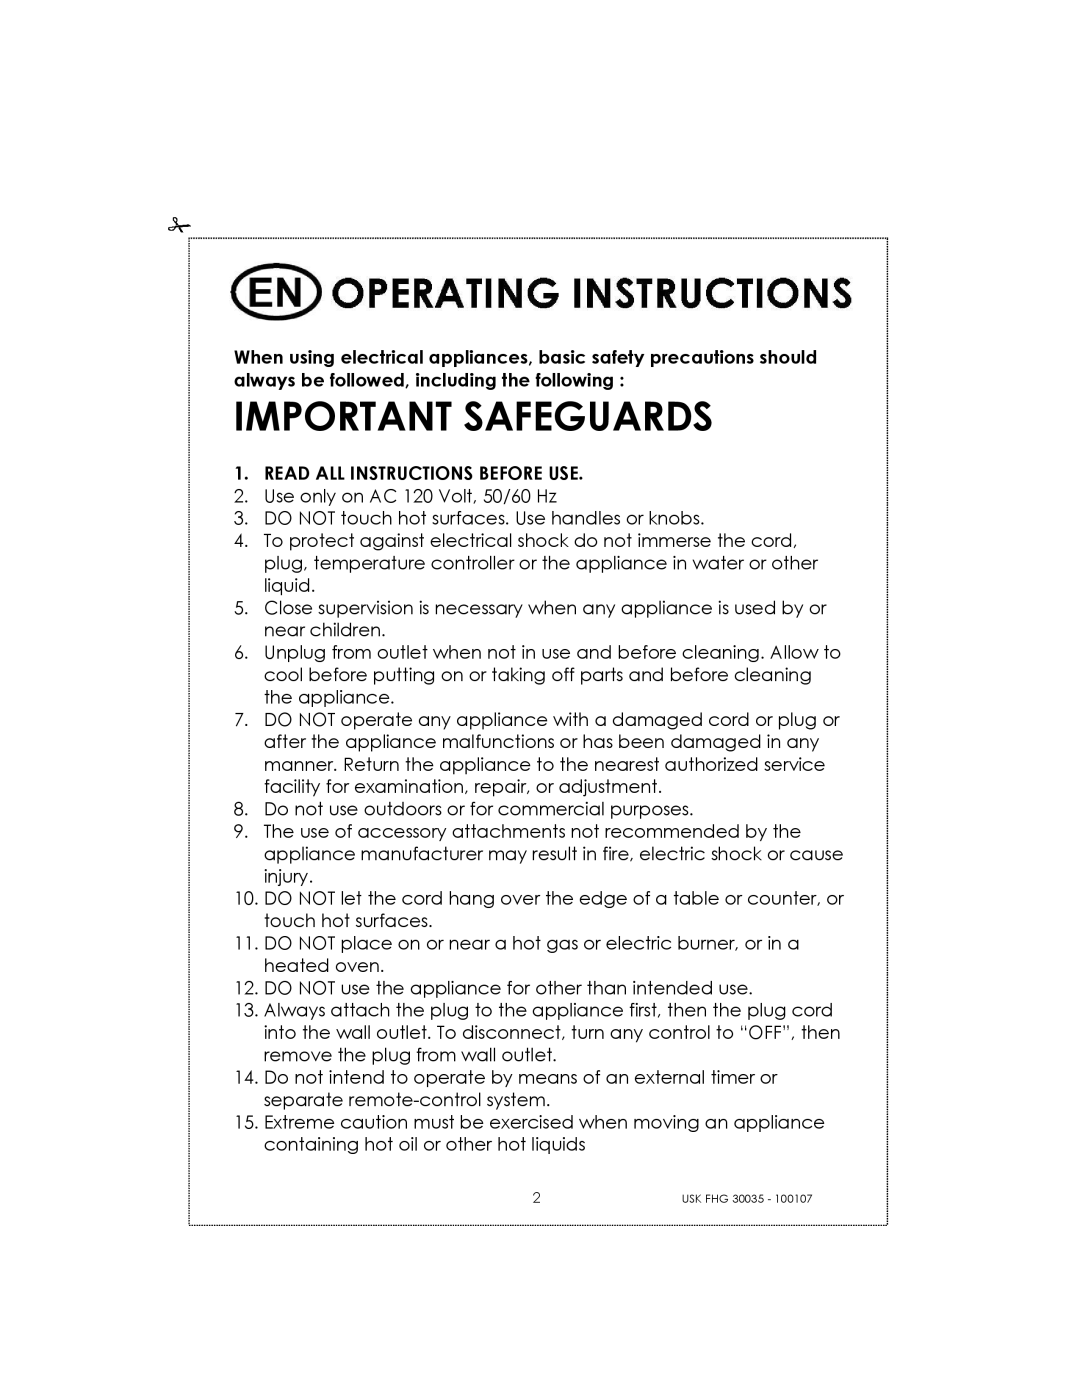 Kalorik 31025, 30035 manual Important Safeguards 